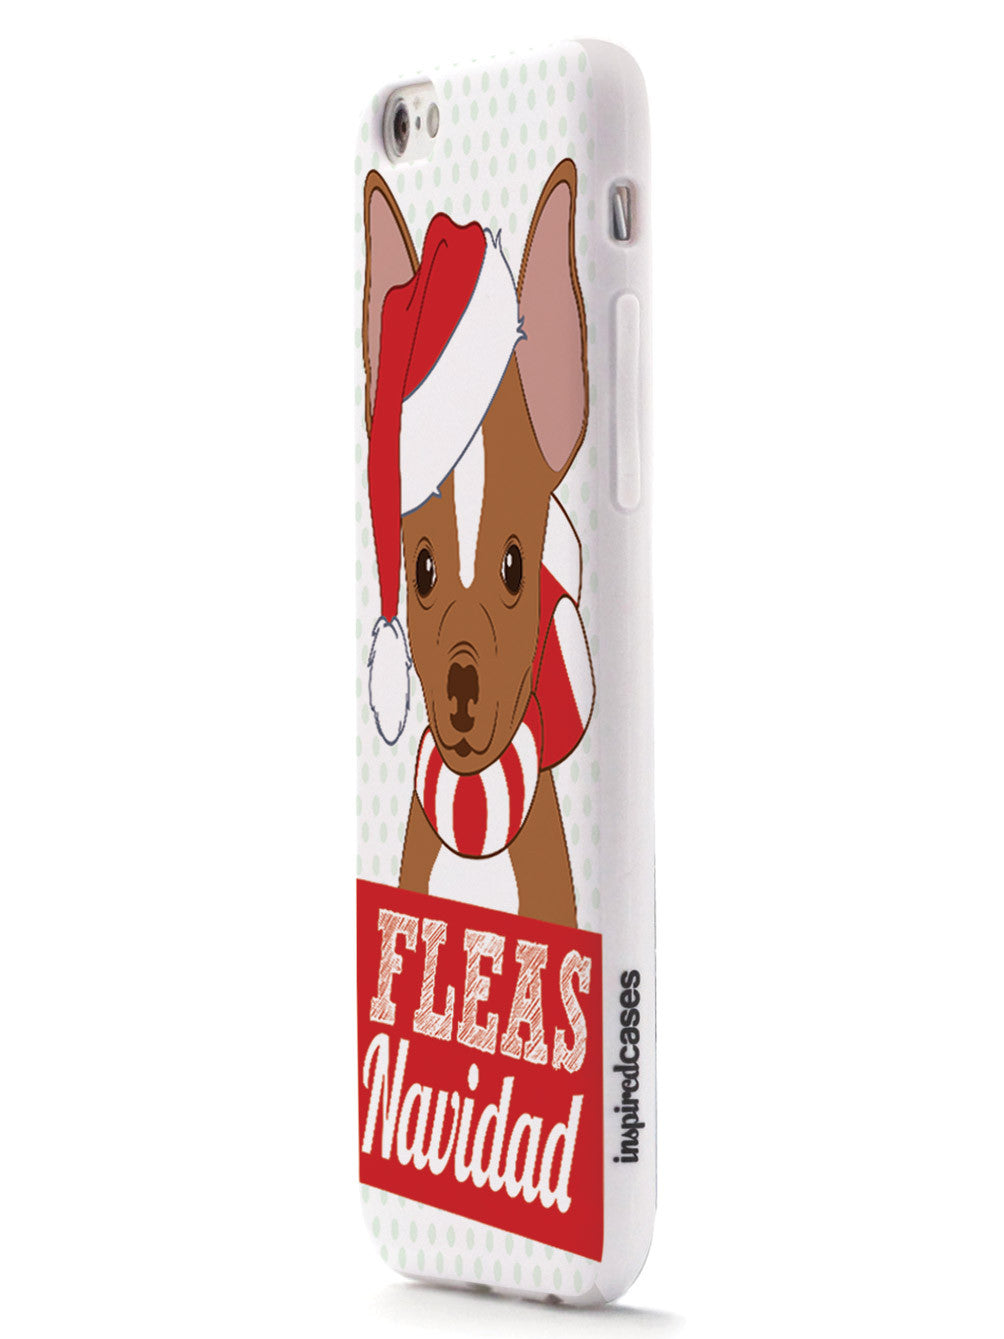 Fleas Navidad - Christmas Chihuahua Case